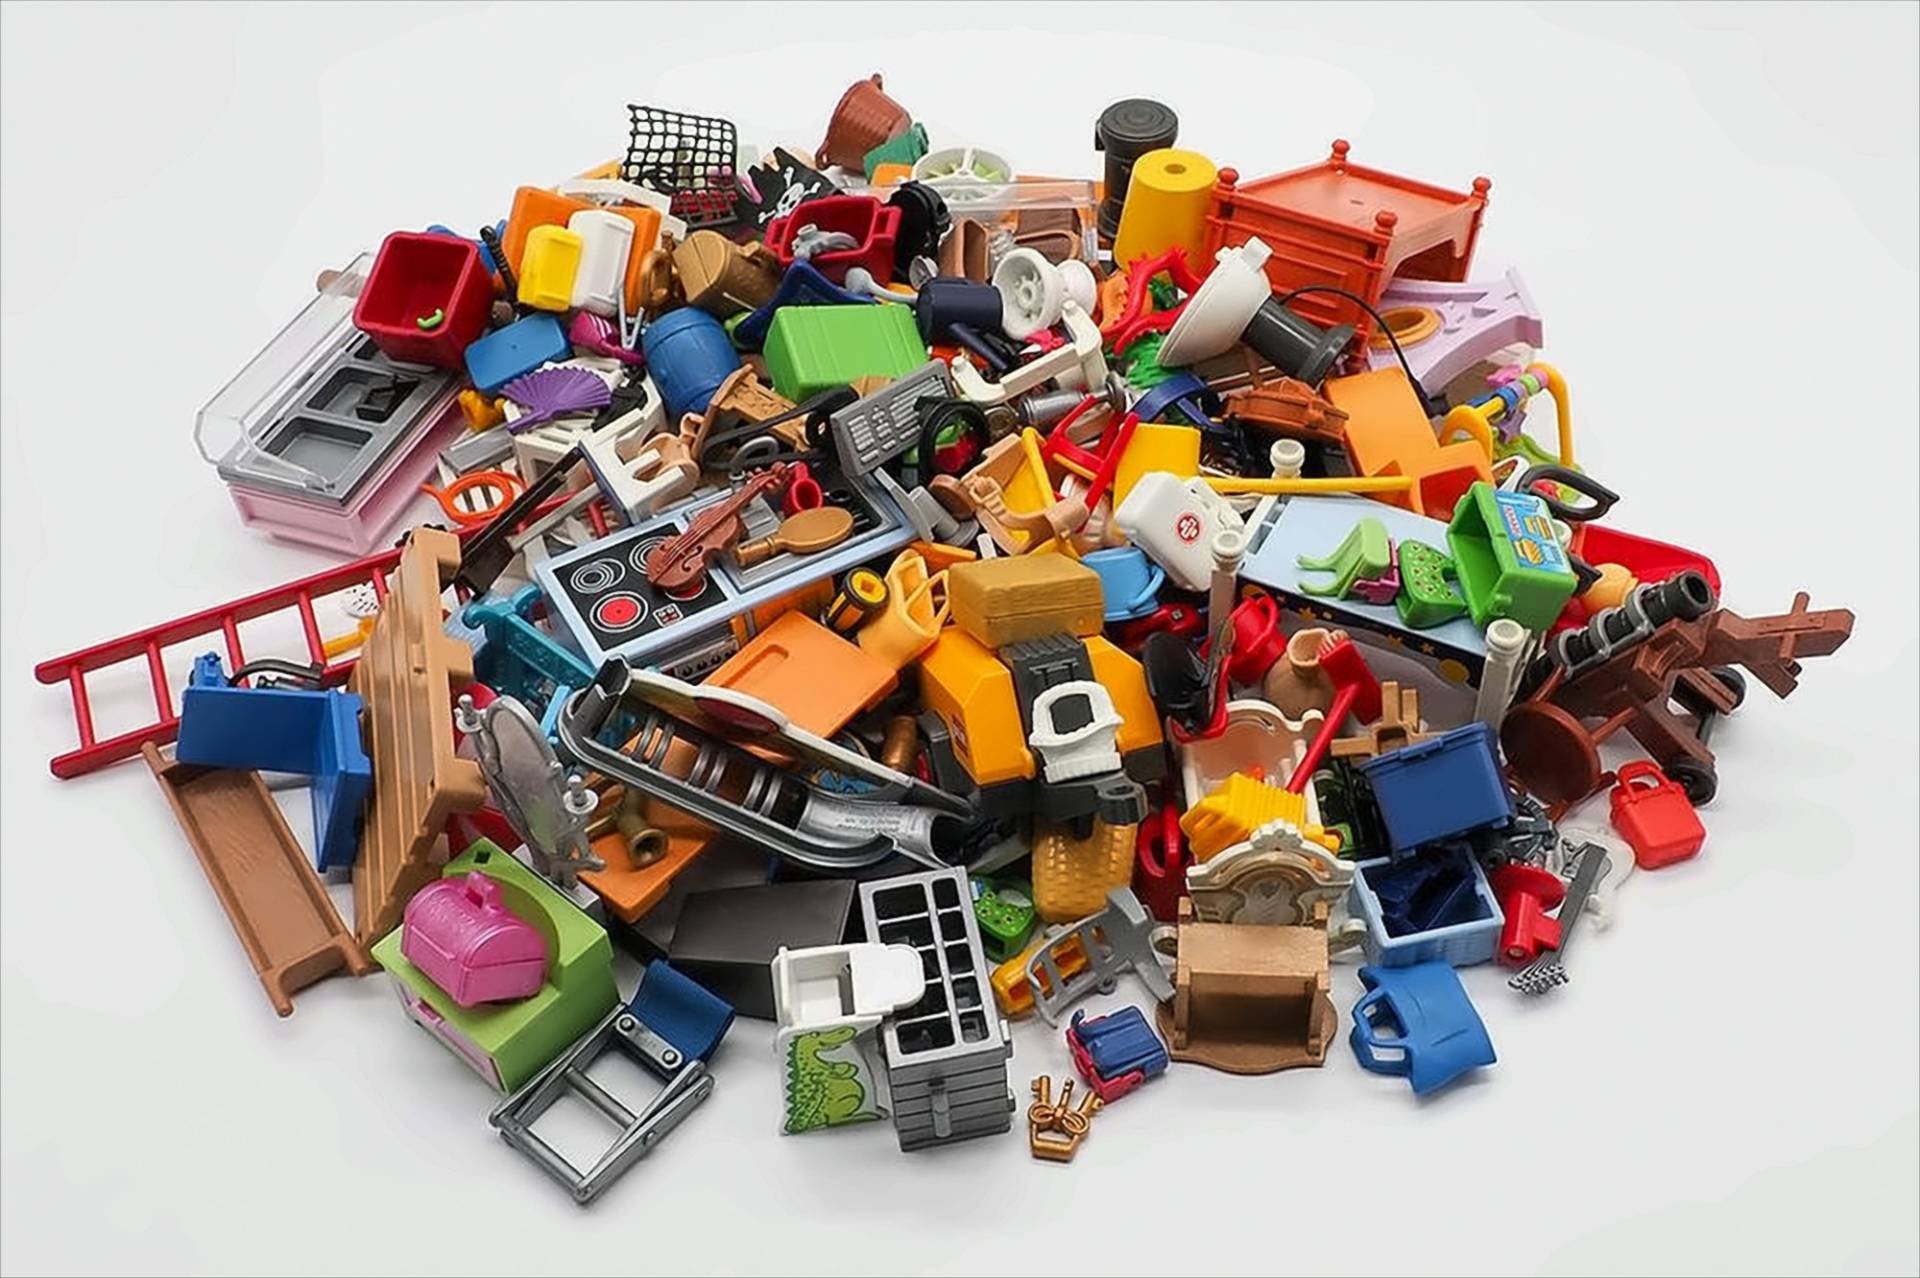 Playmobil 1KG - Figuren, Tiere, Bauteile gemischt- Kiloware von geobra Brandstätter Stiftung & Co. KG